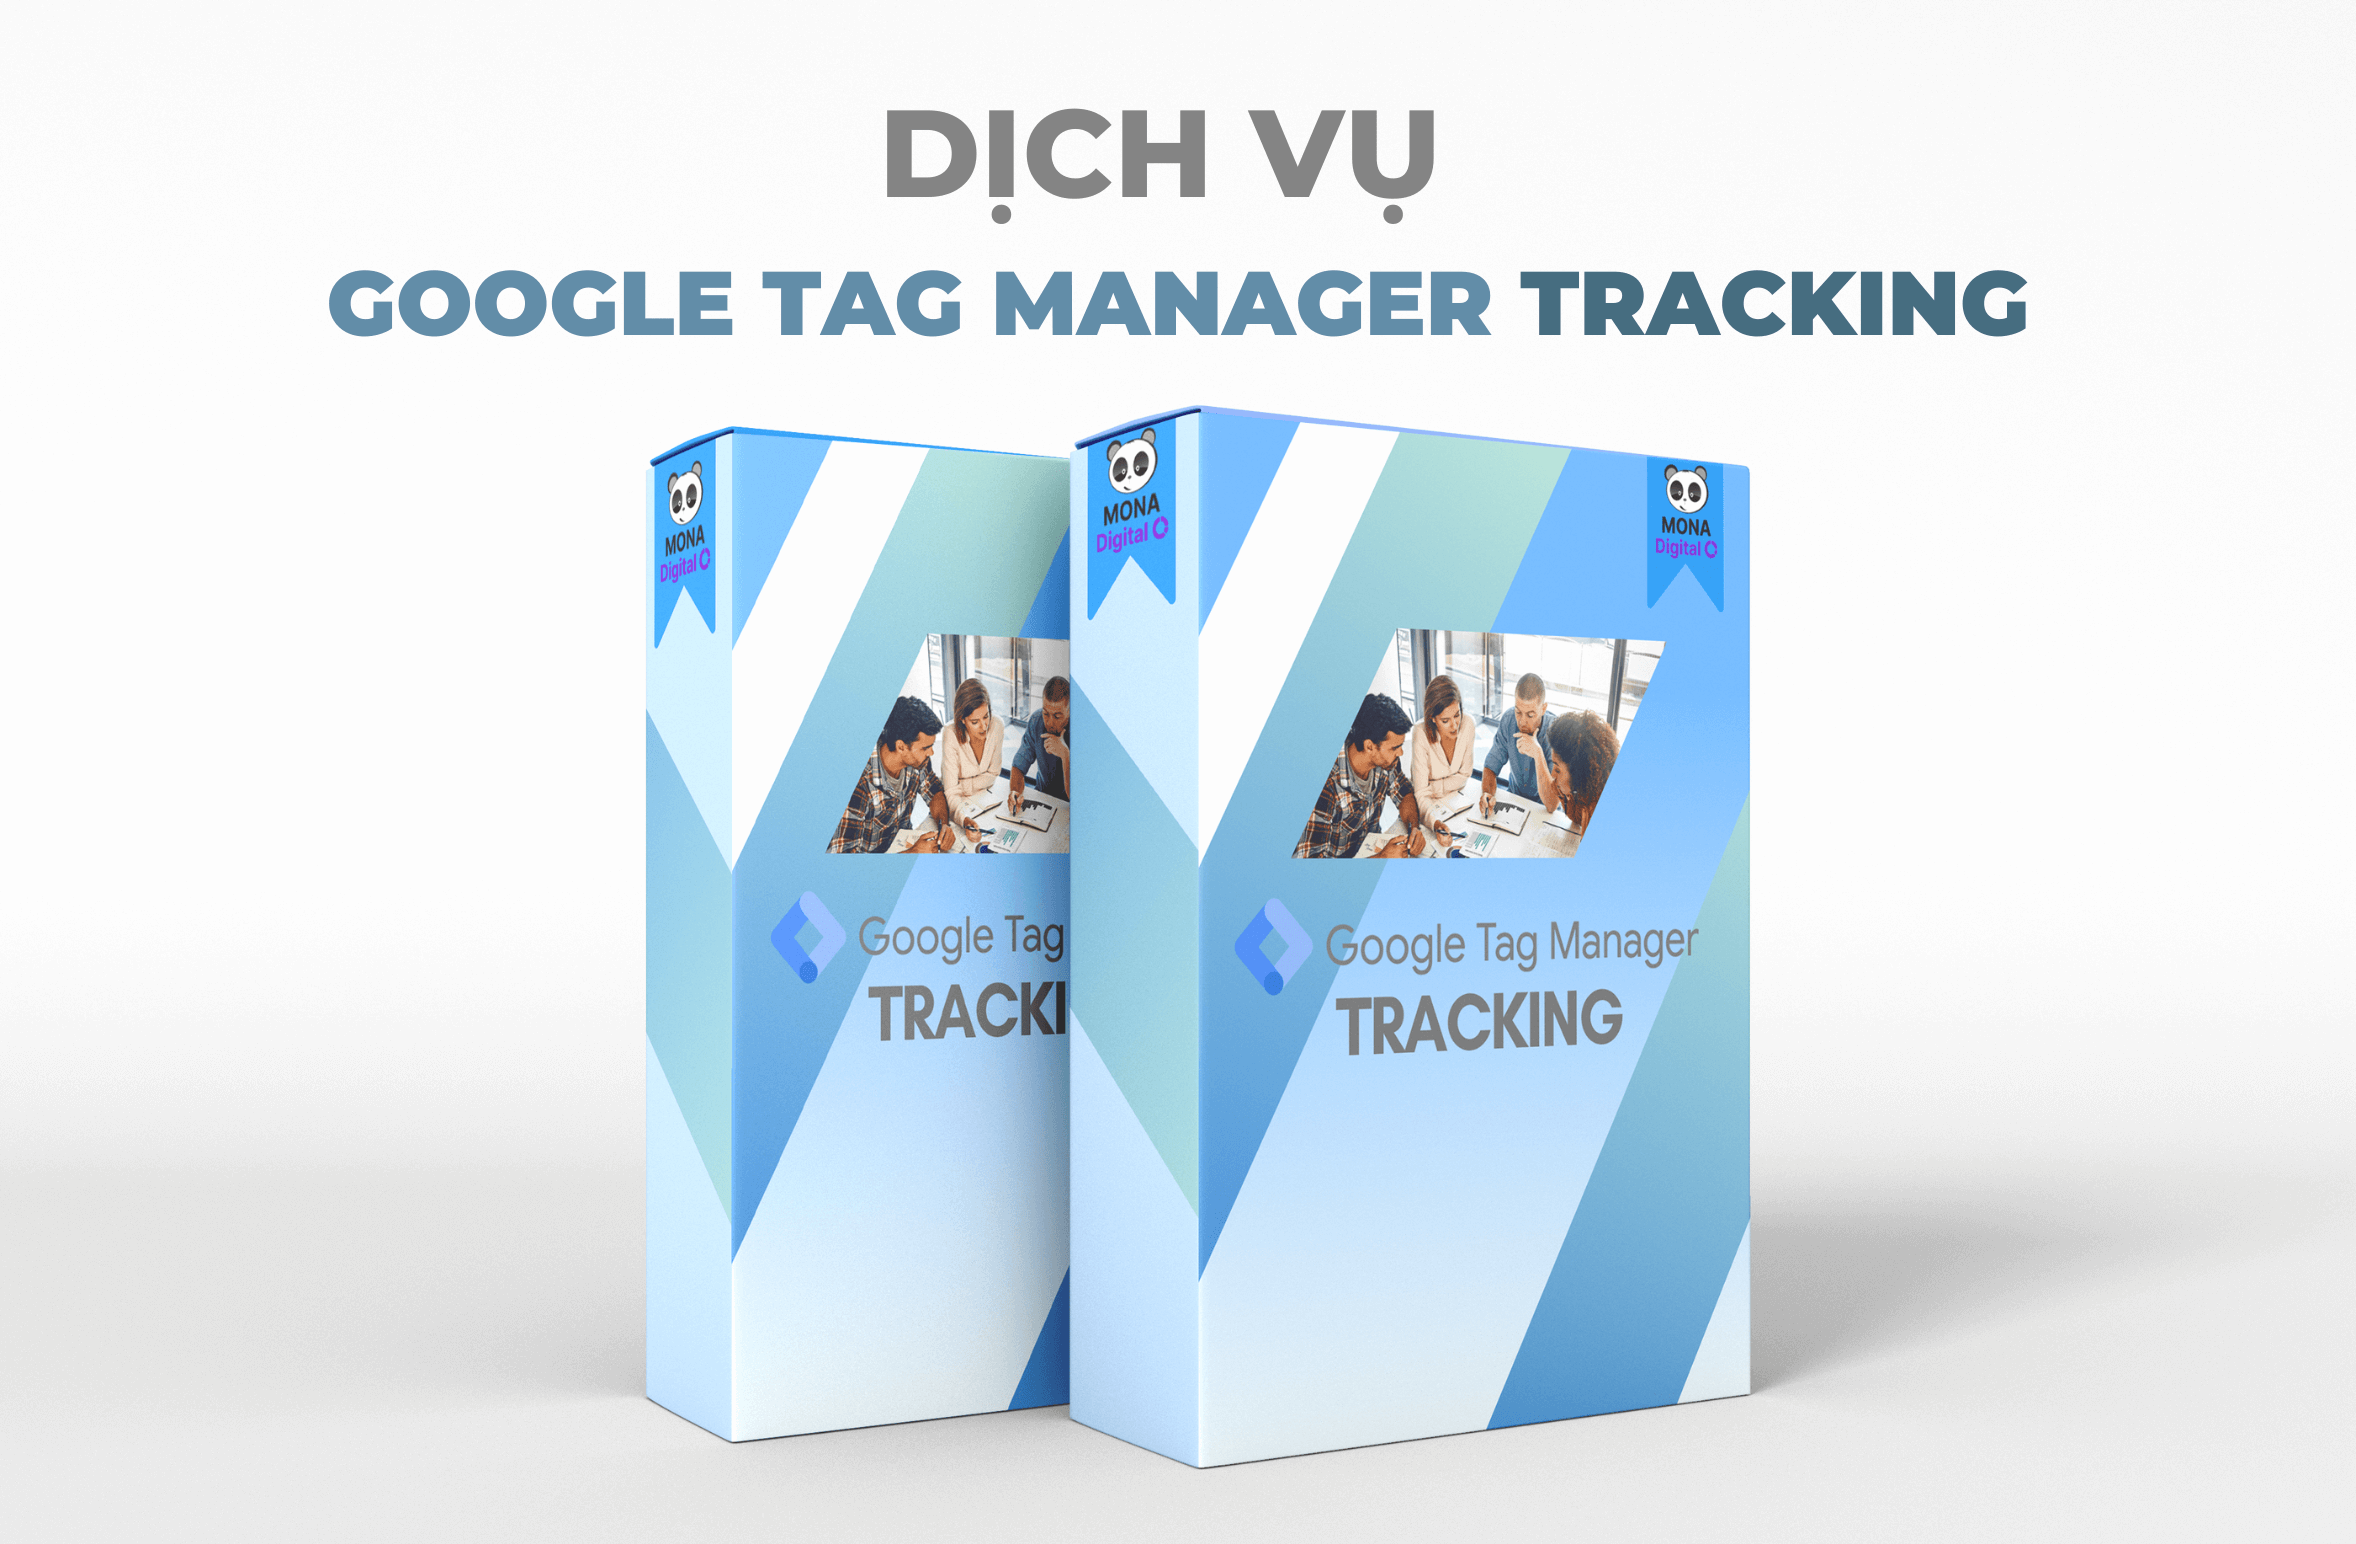 Tư Vấn Và Cung Cấp Giải Pháp Google Tag Manager Tracking